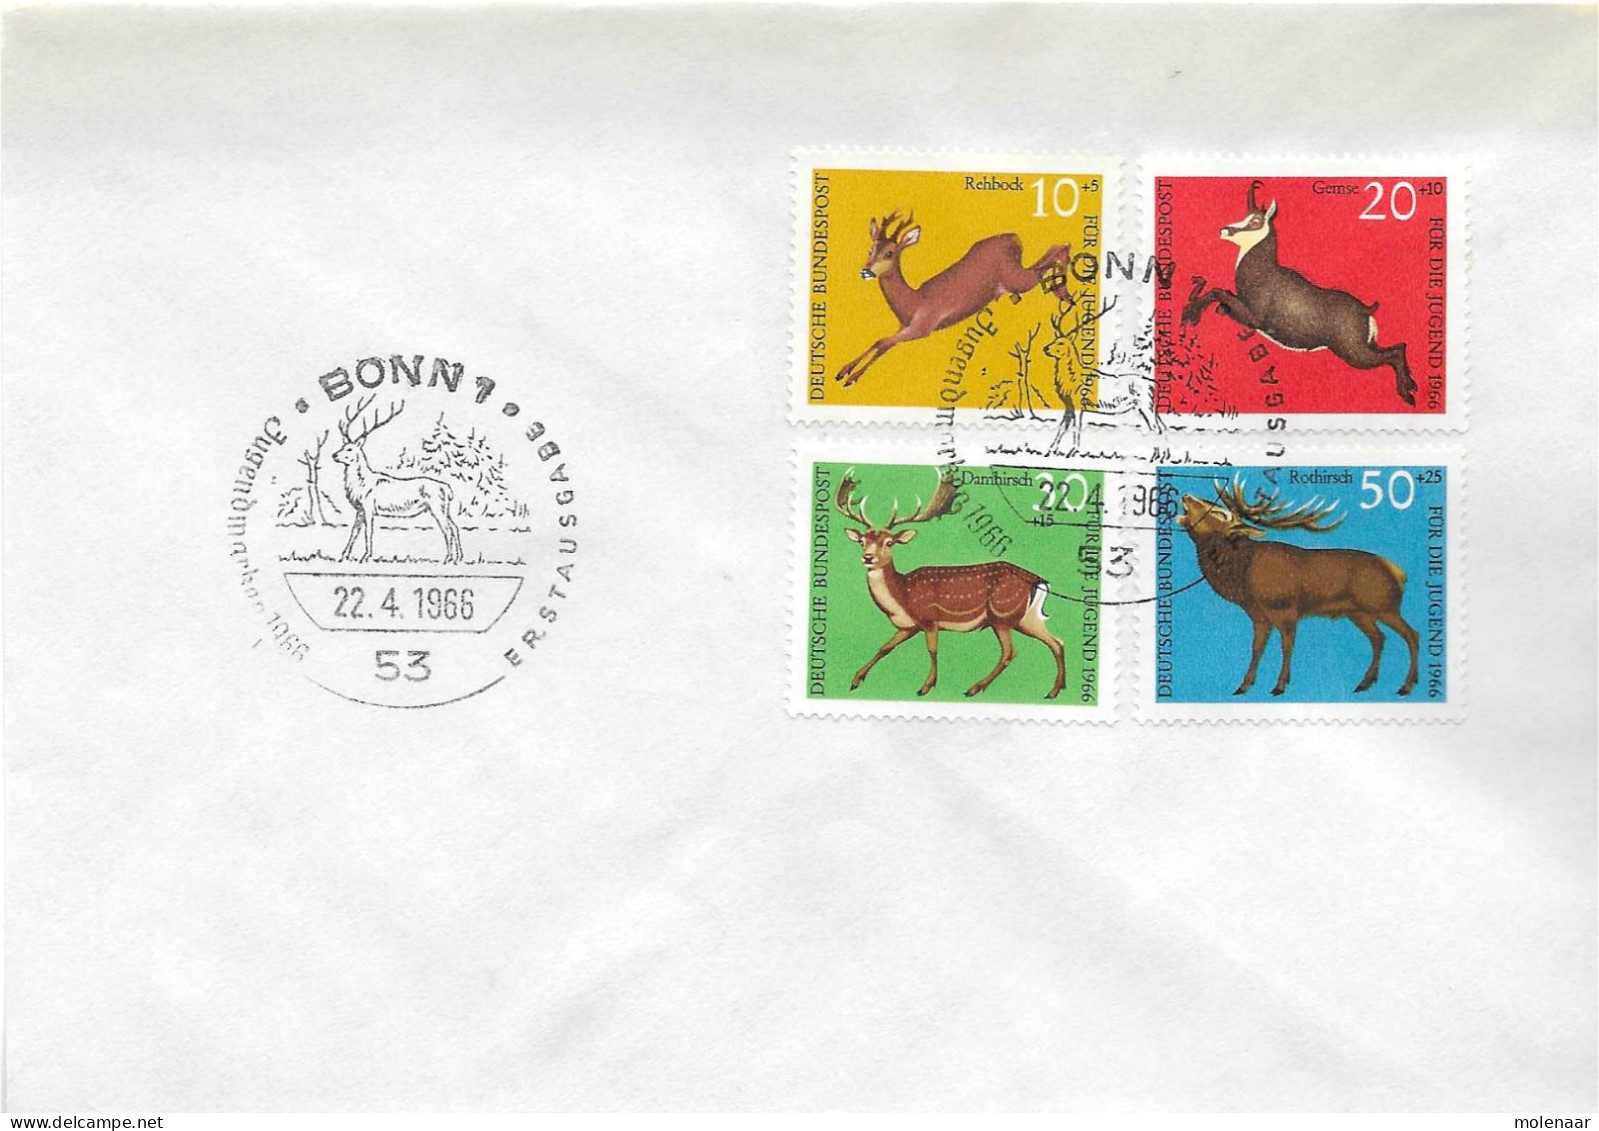 Postzegels > Europa > Duitsland > West-Duitsland > 1960-1969 > Brief Met No. 511-514 (17380) - Lettres & Documents